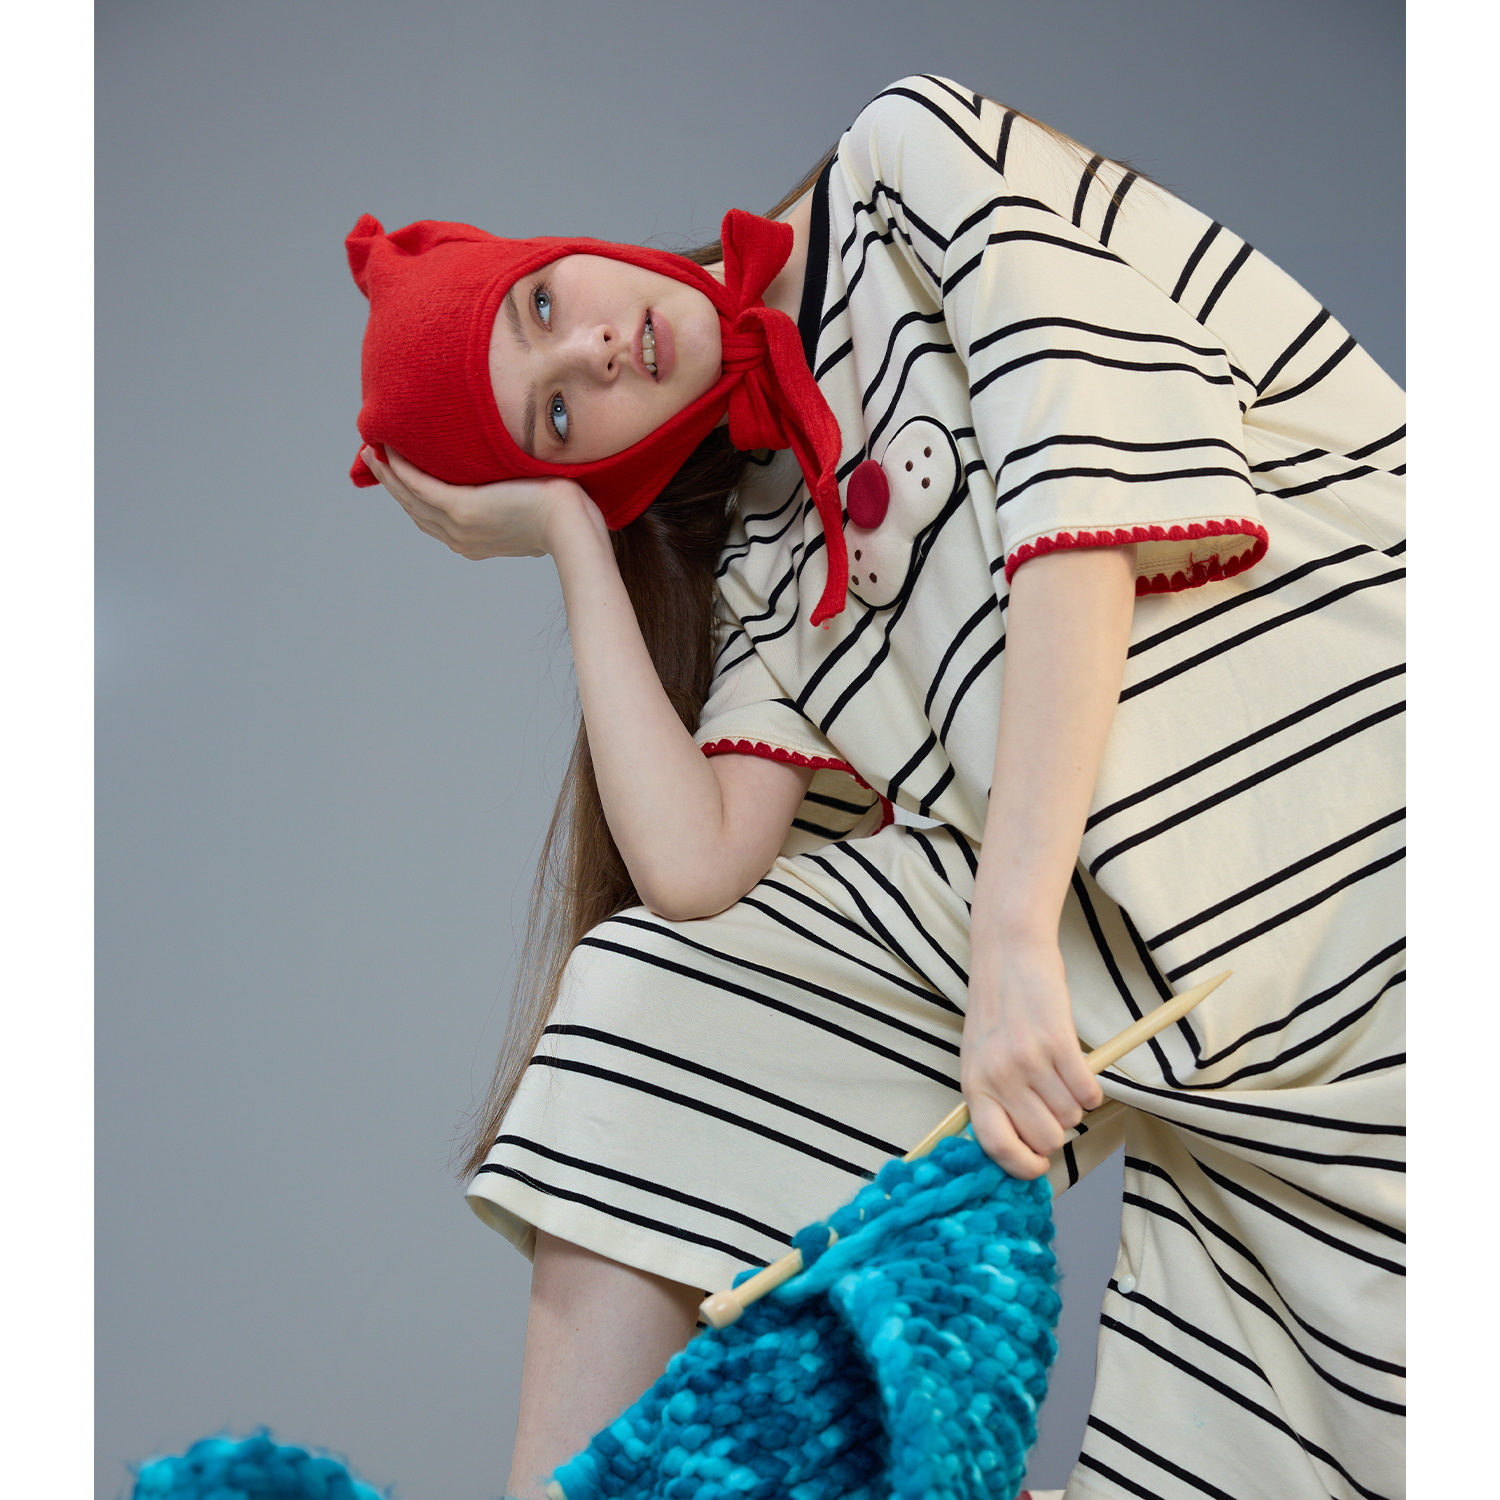 yso【酷猫系列】连体睡衣女夏季睡裙可爱条纹家居服套装可外穿B